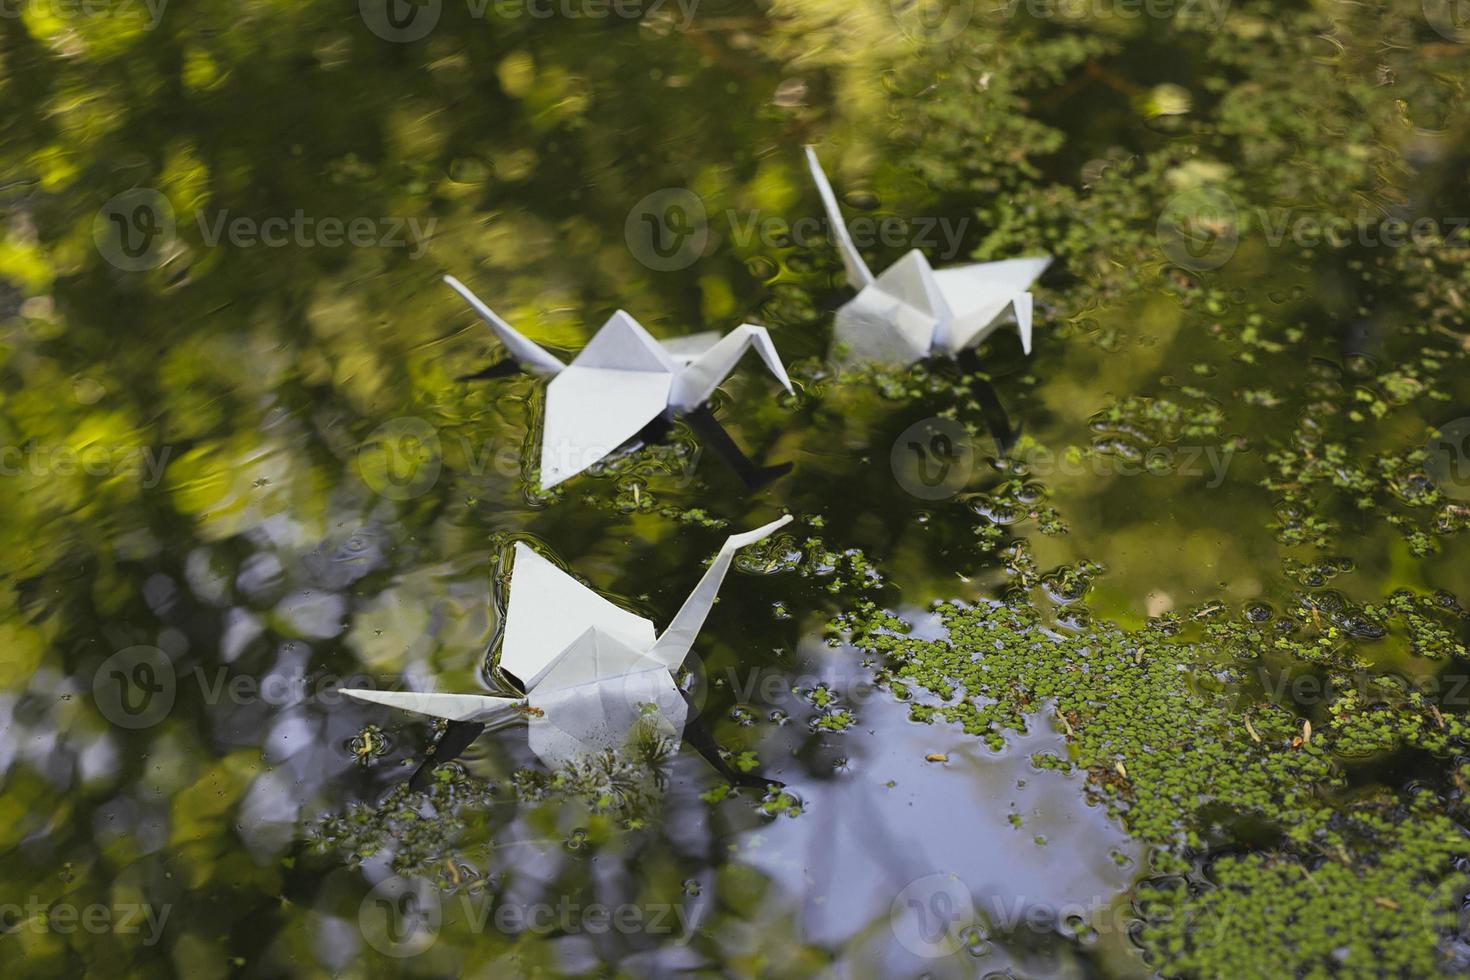 cerrar grullas de origami flotando en el agua concepto foto